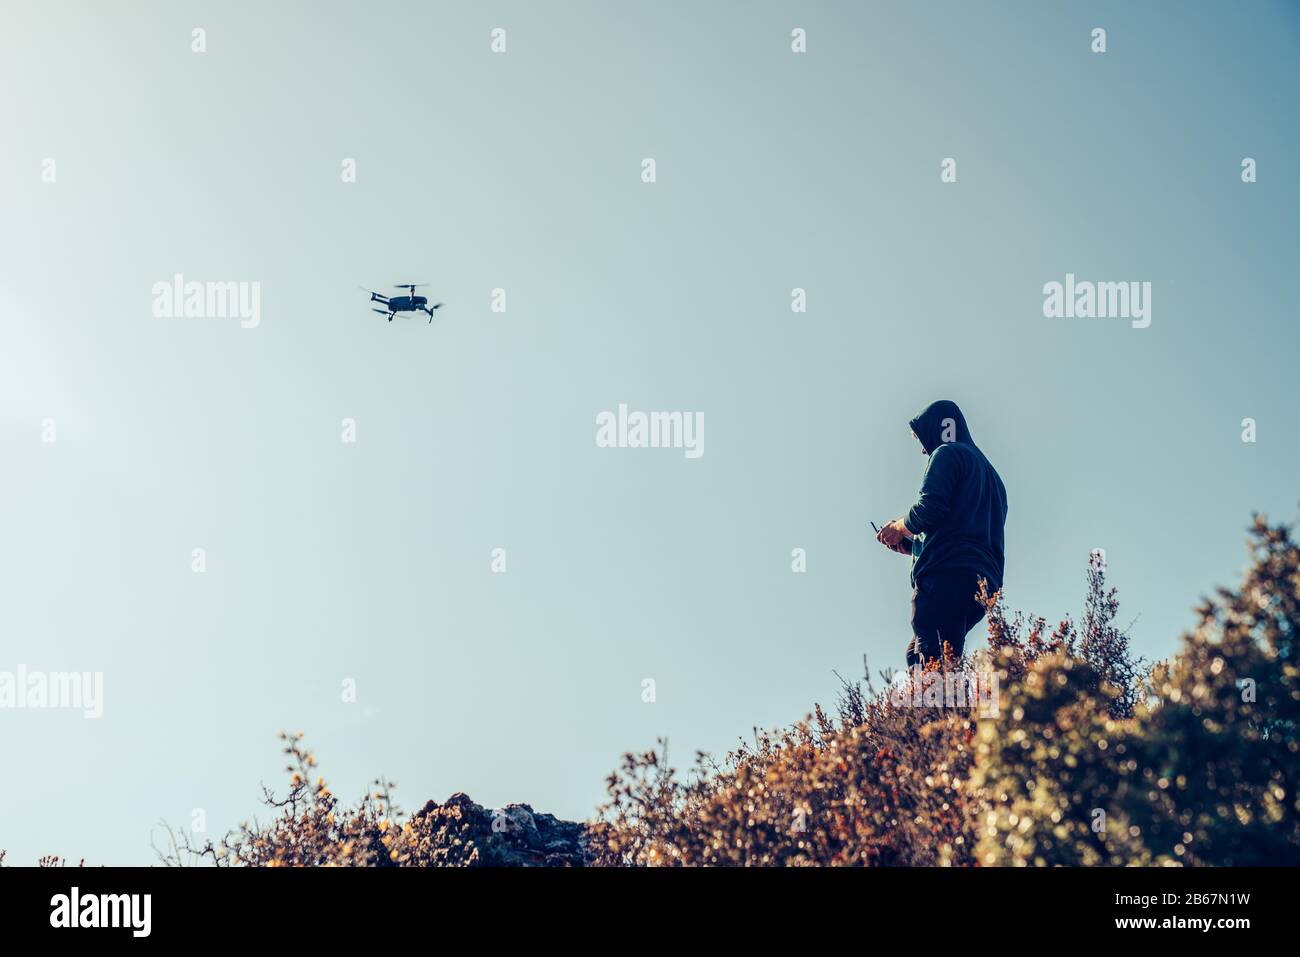 Une silhouette de drone Quadrocopter et le pilote la commande, avec la caméra contre le ciel bleu Banque D'Images